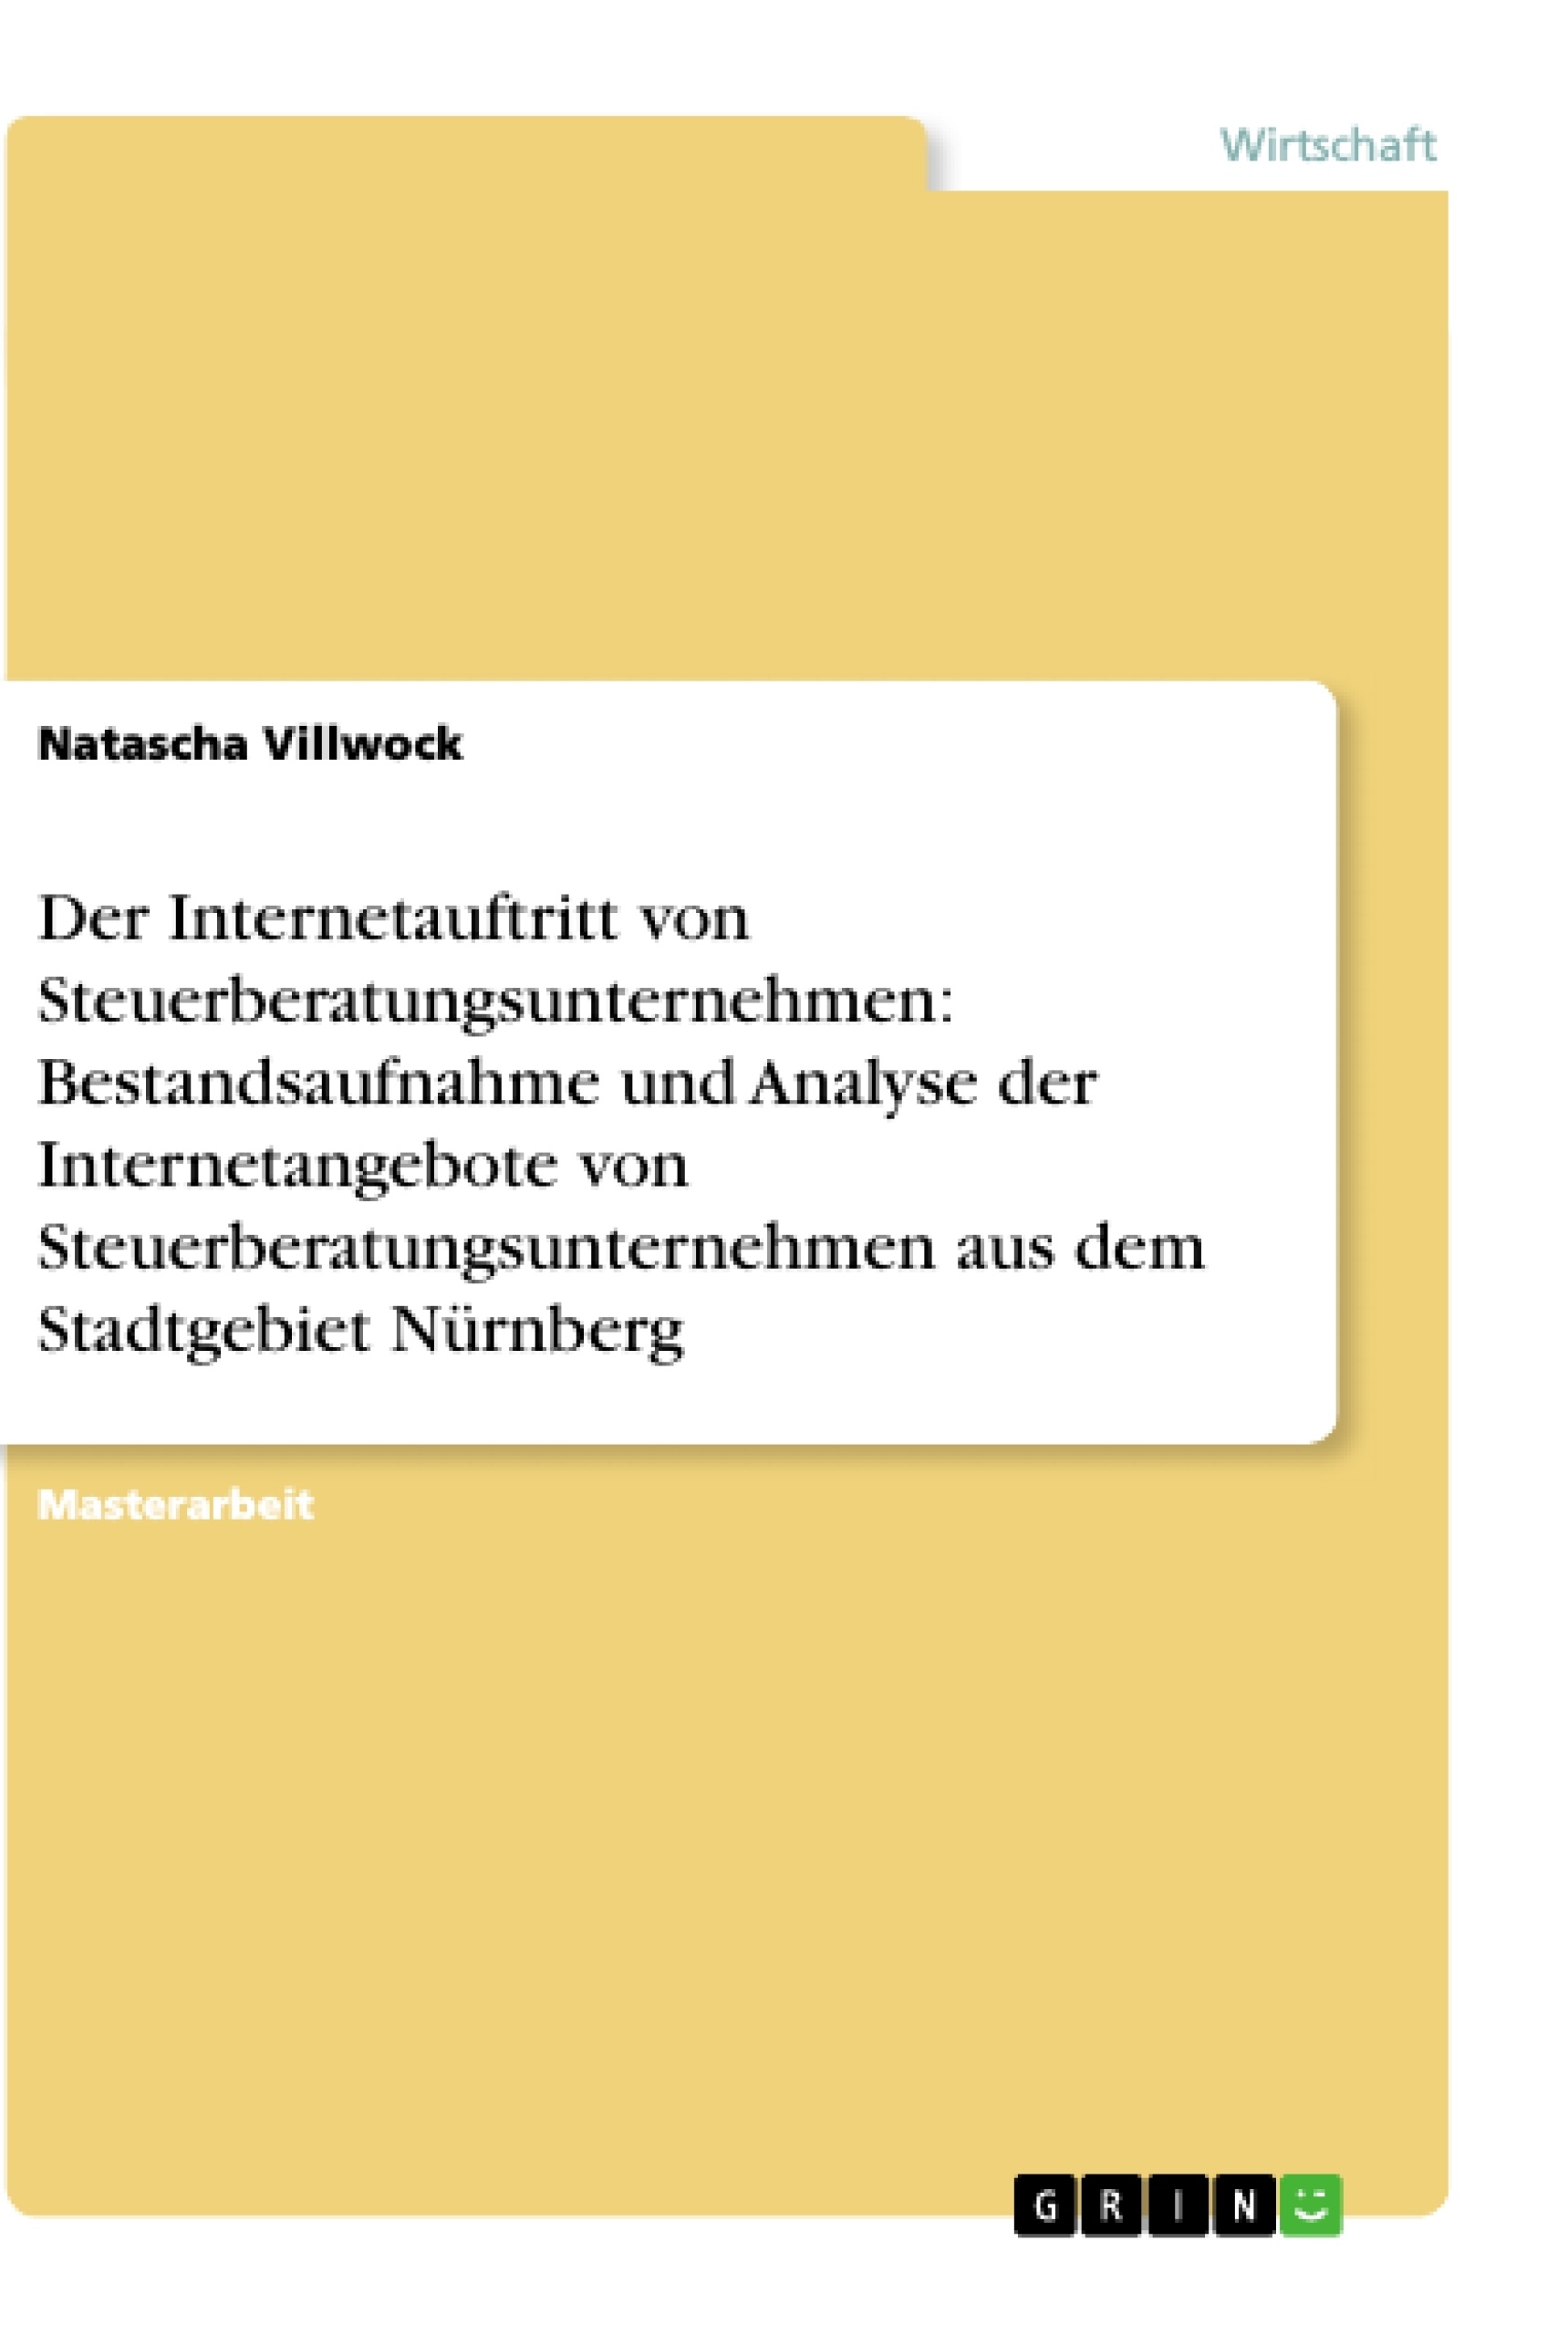 Título: Der Internetauftritt von Steuerberatungsunternehmen: Bestandsaufnahme und Analyse der Internetangebote von Steuerberatungsunternehmen aus dem Stadtgebiet Nürnberg